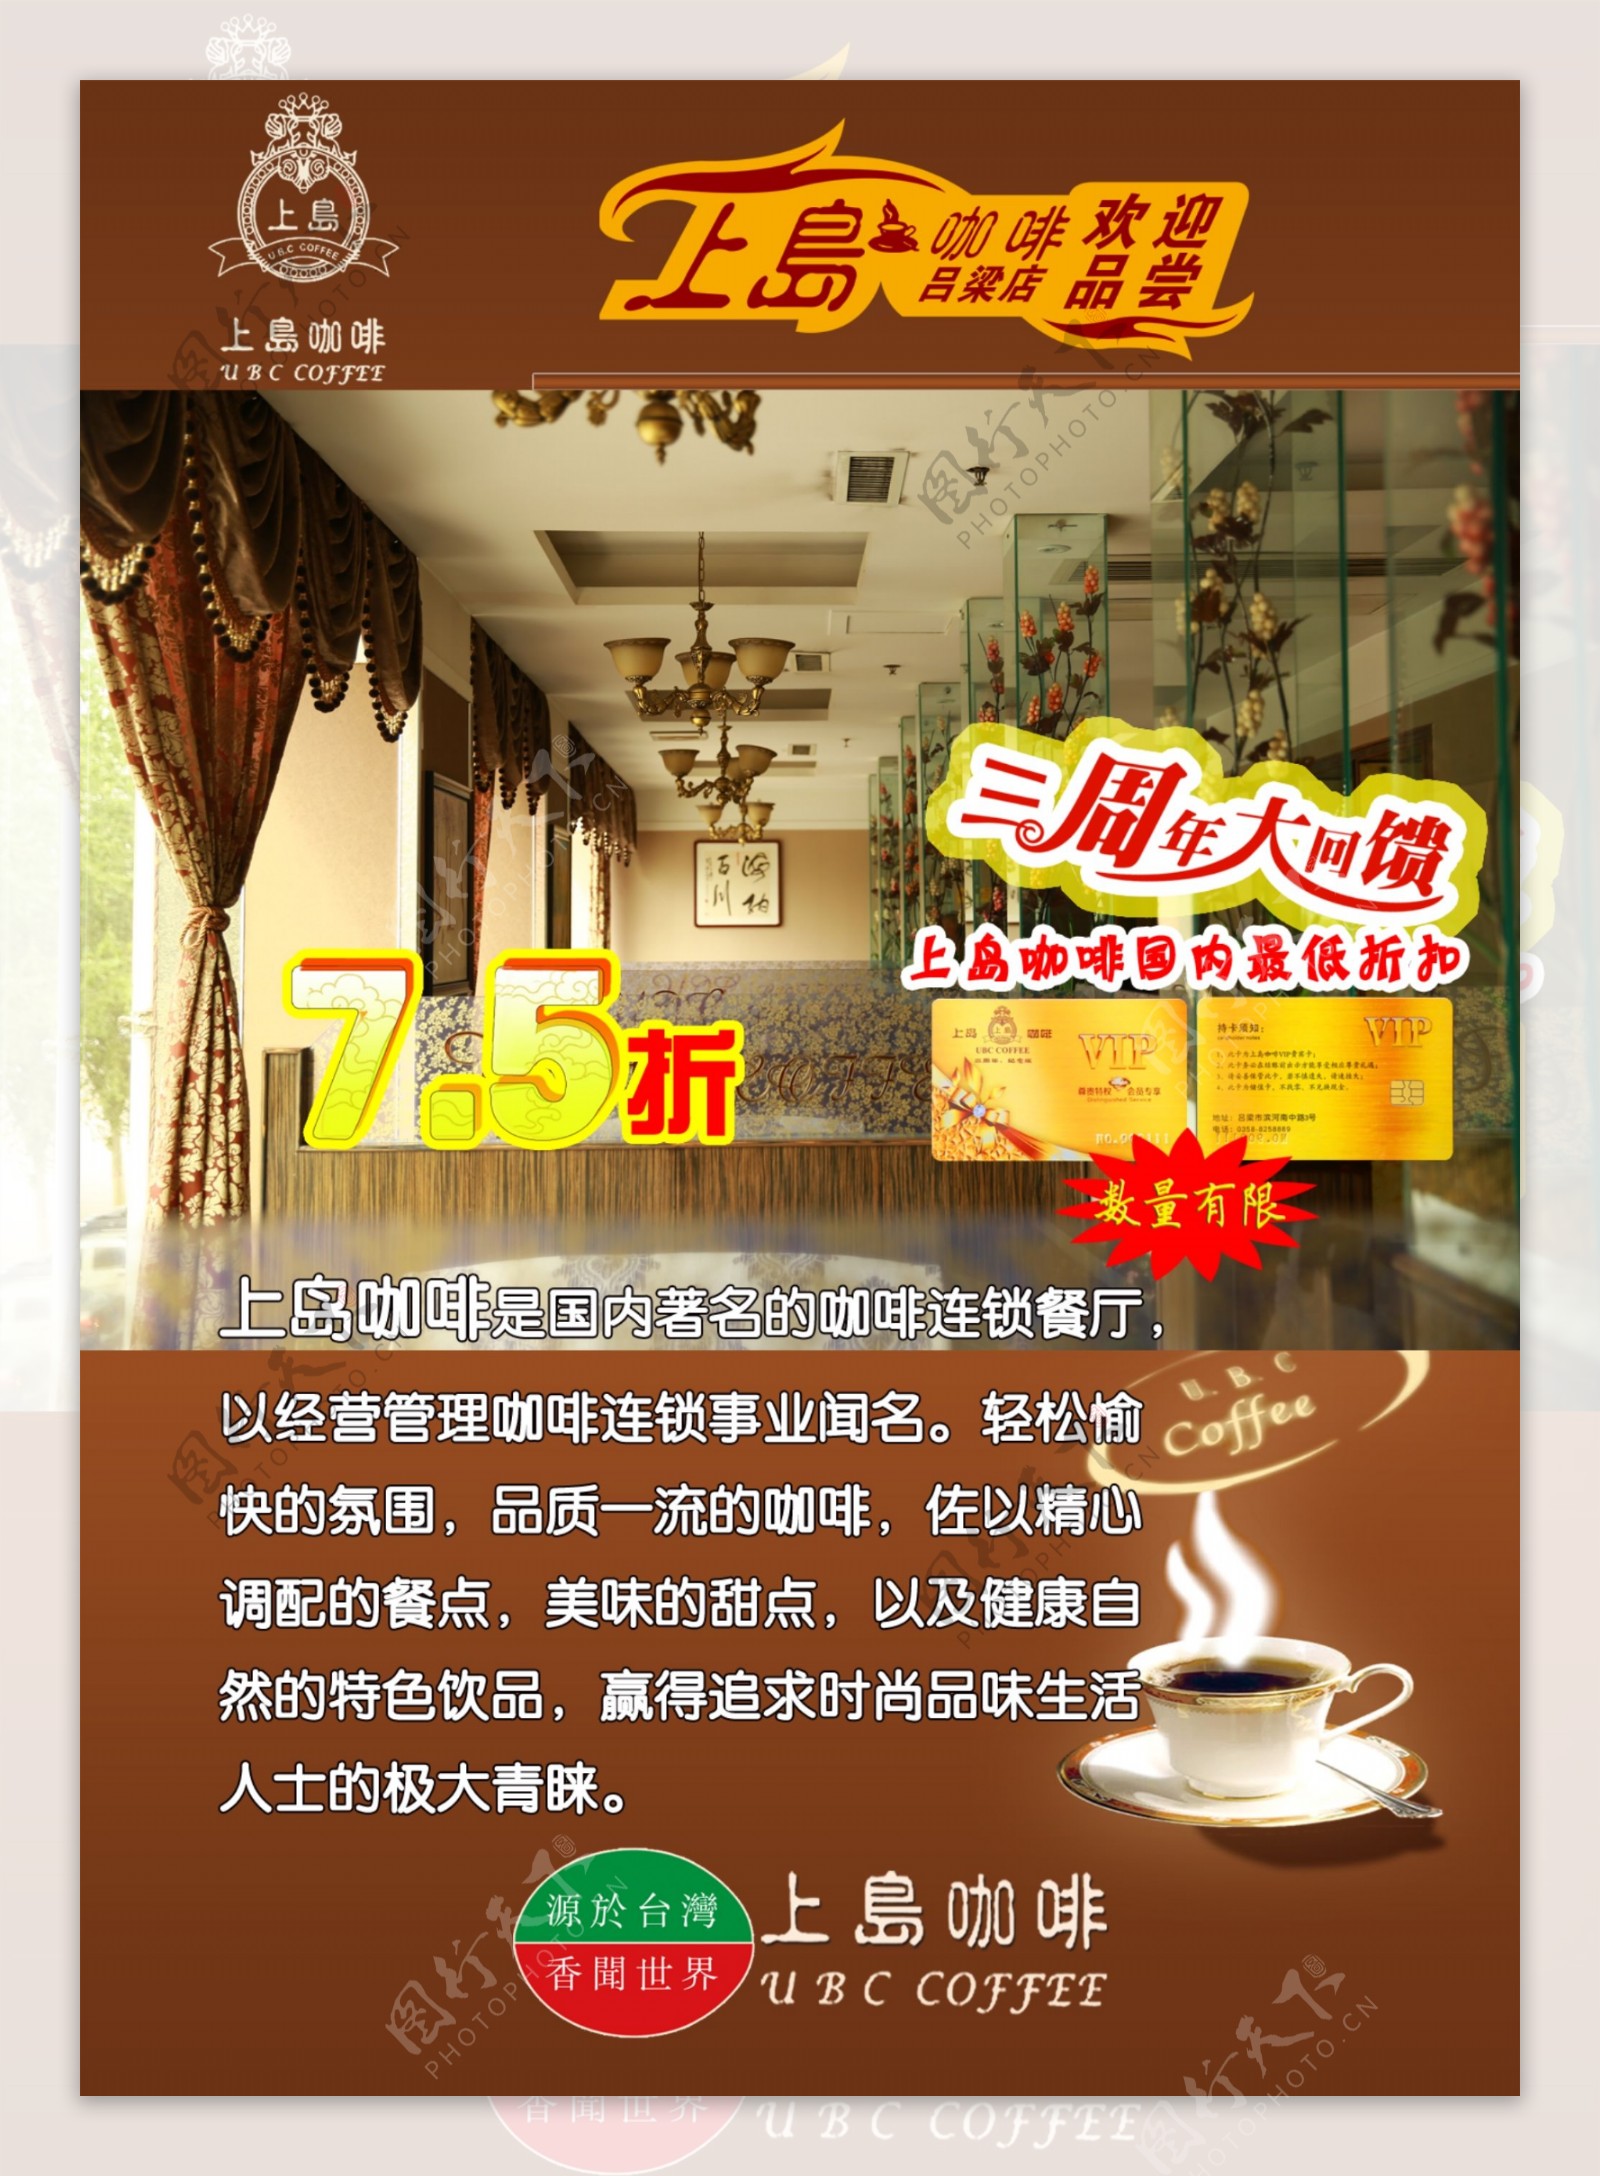 上岛咖啡三周年活动灯箱片1